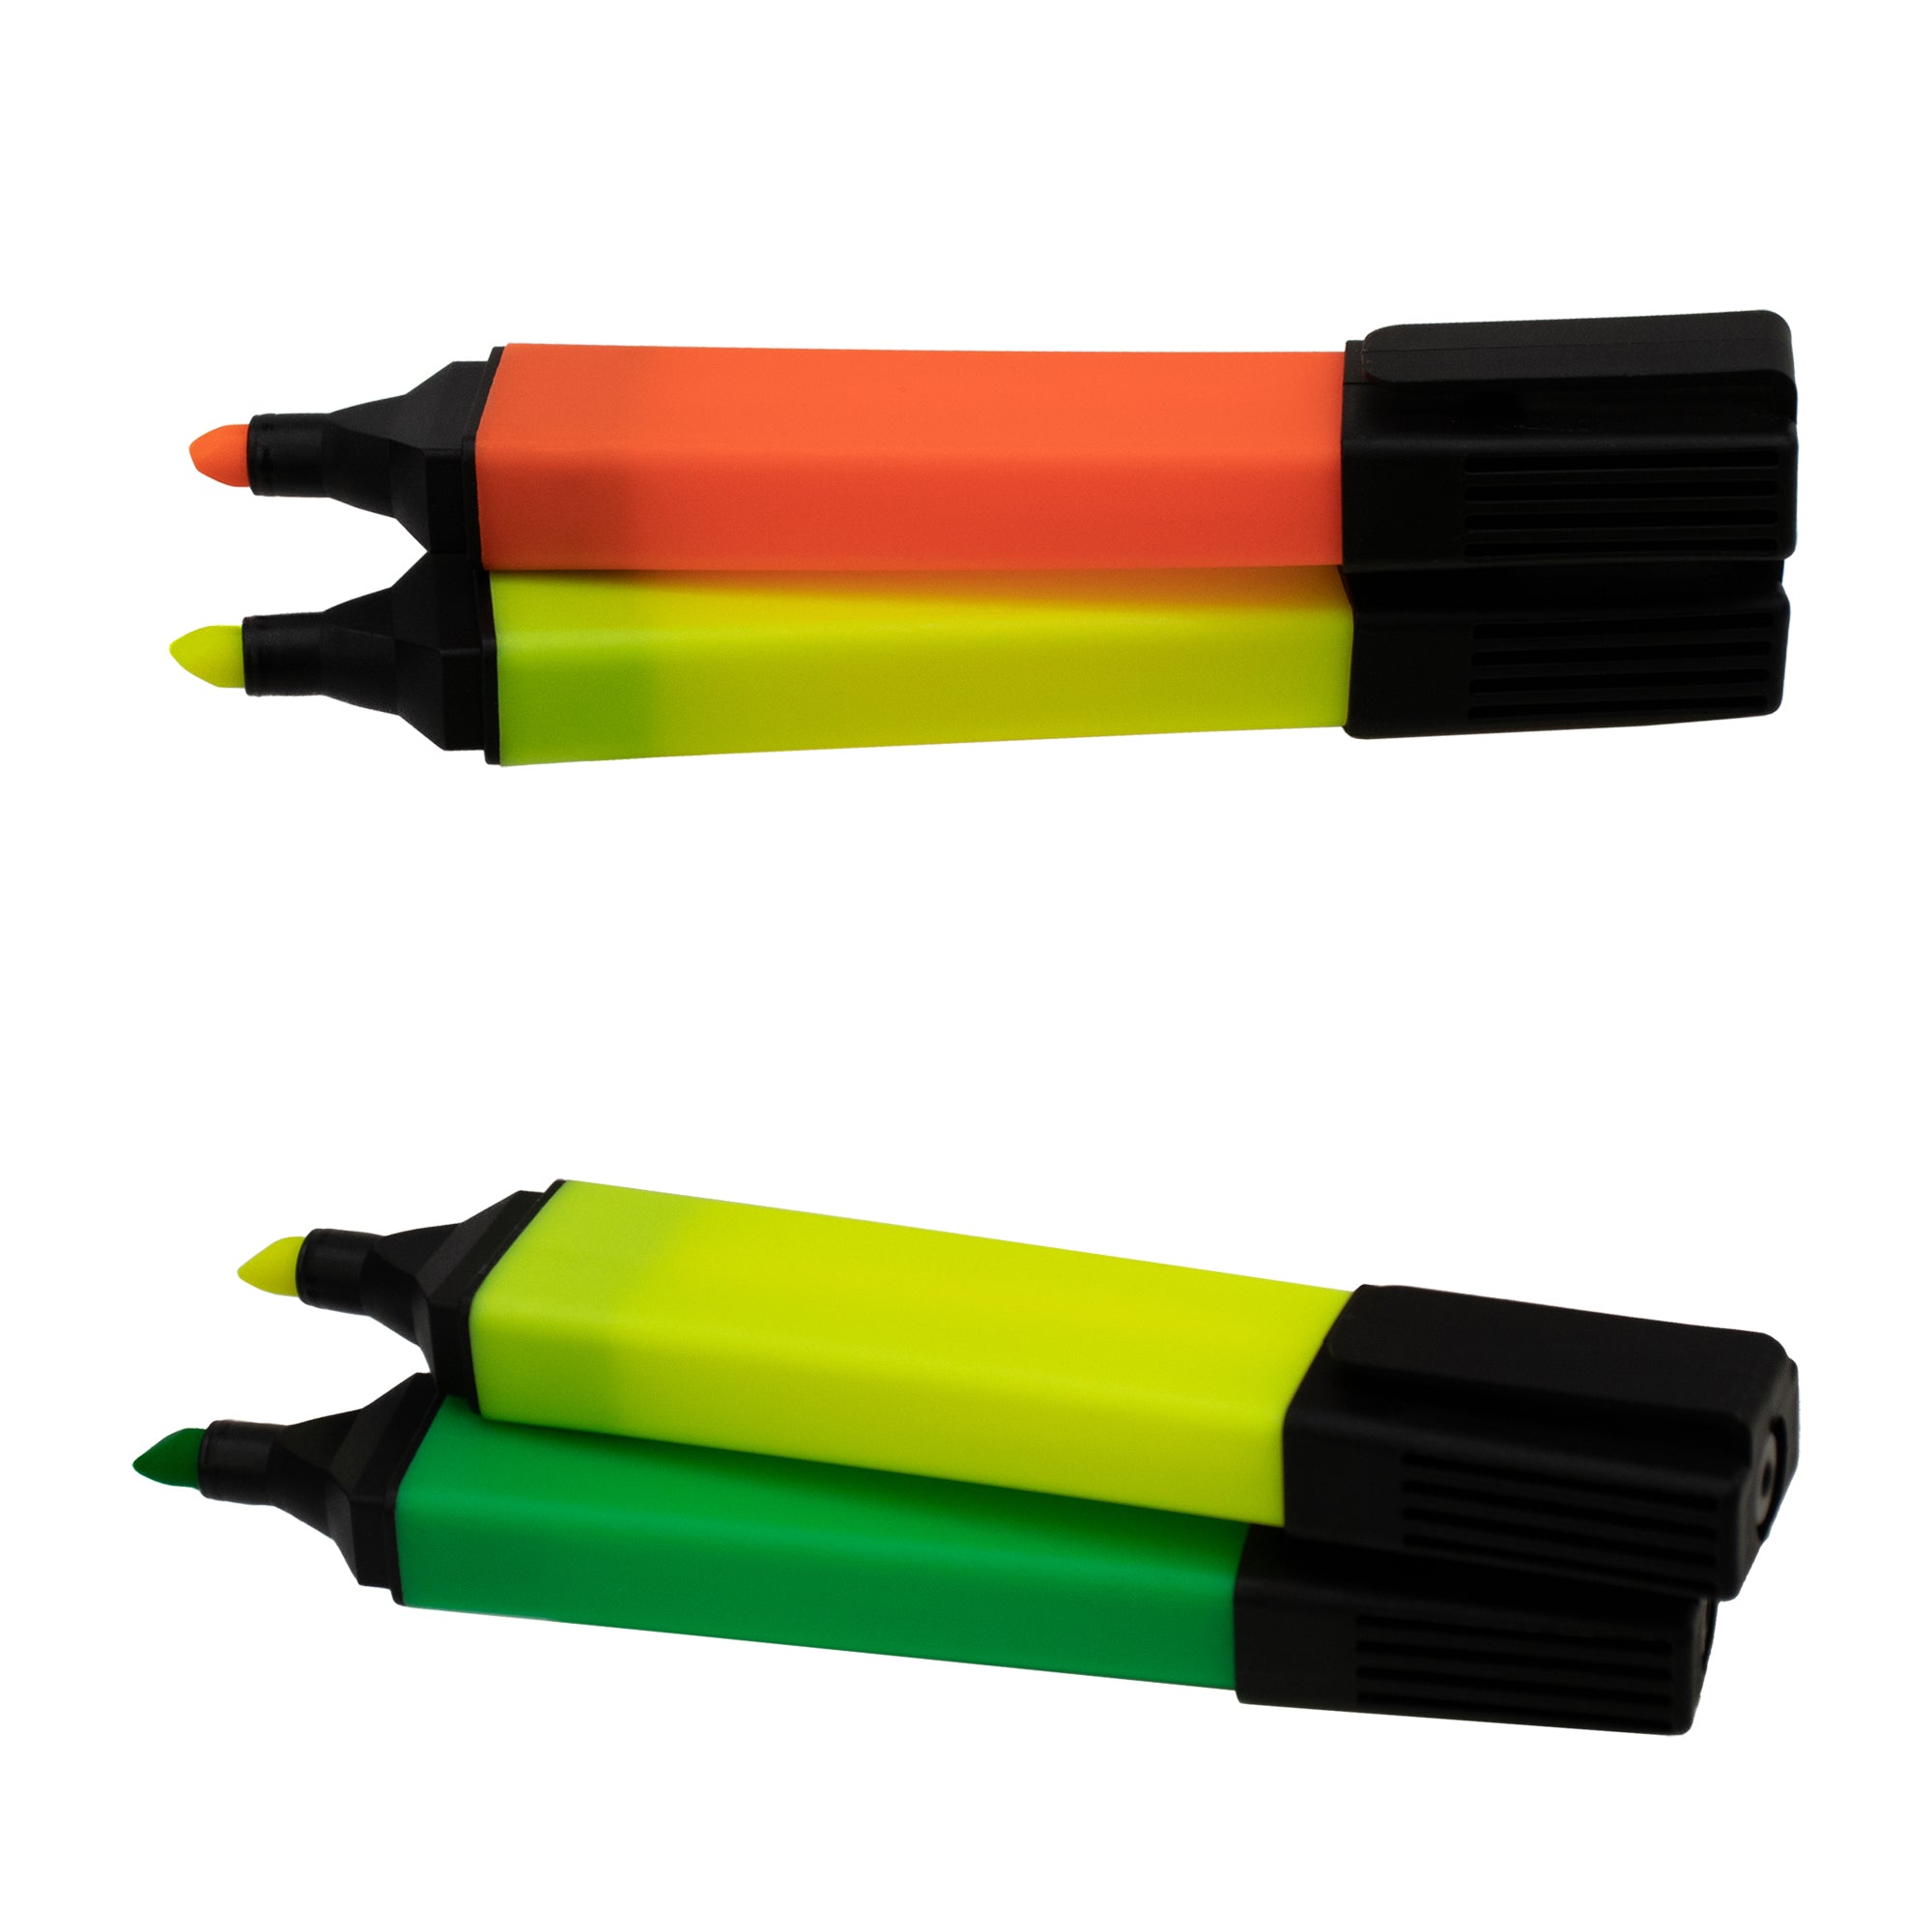 96 Bulk PVC Zipper pencil pouch, assorted neon colors - at